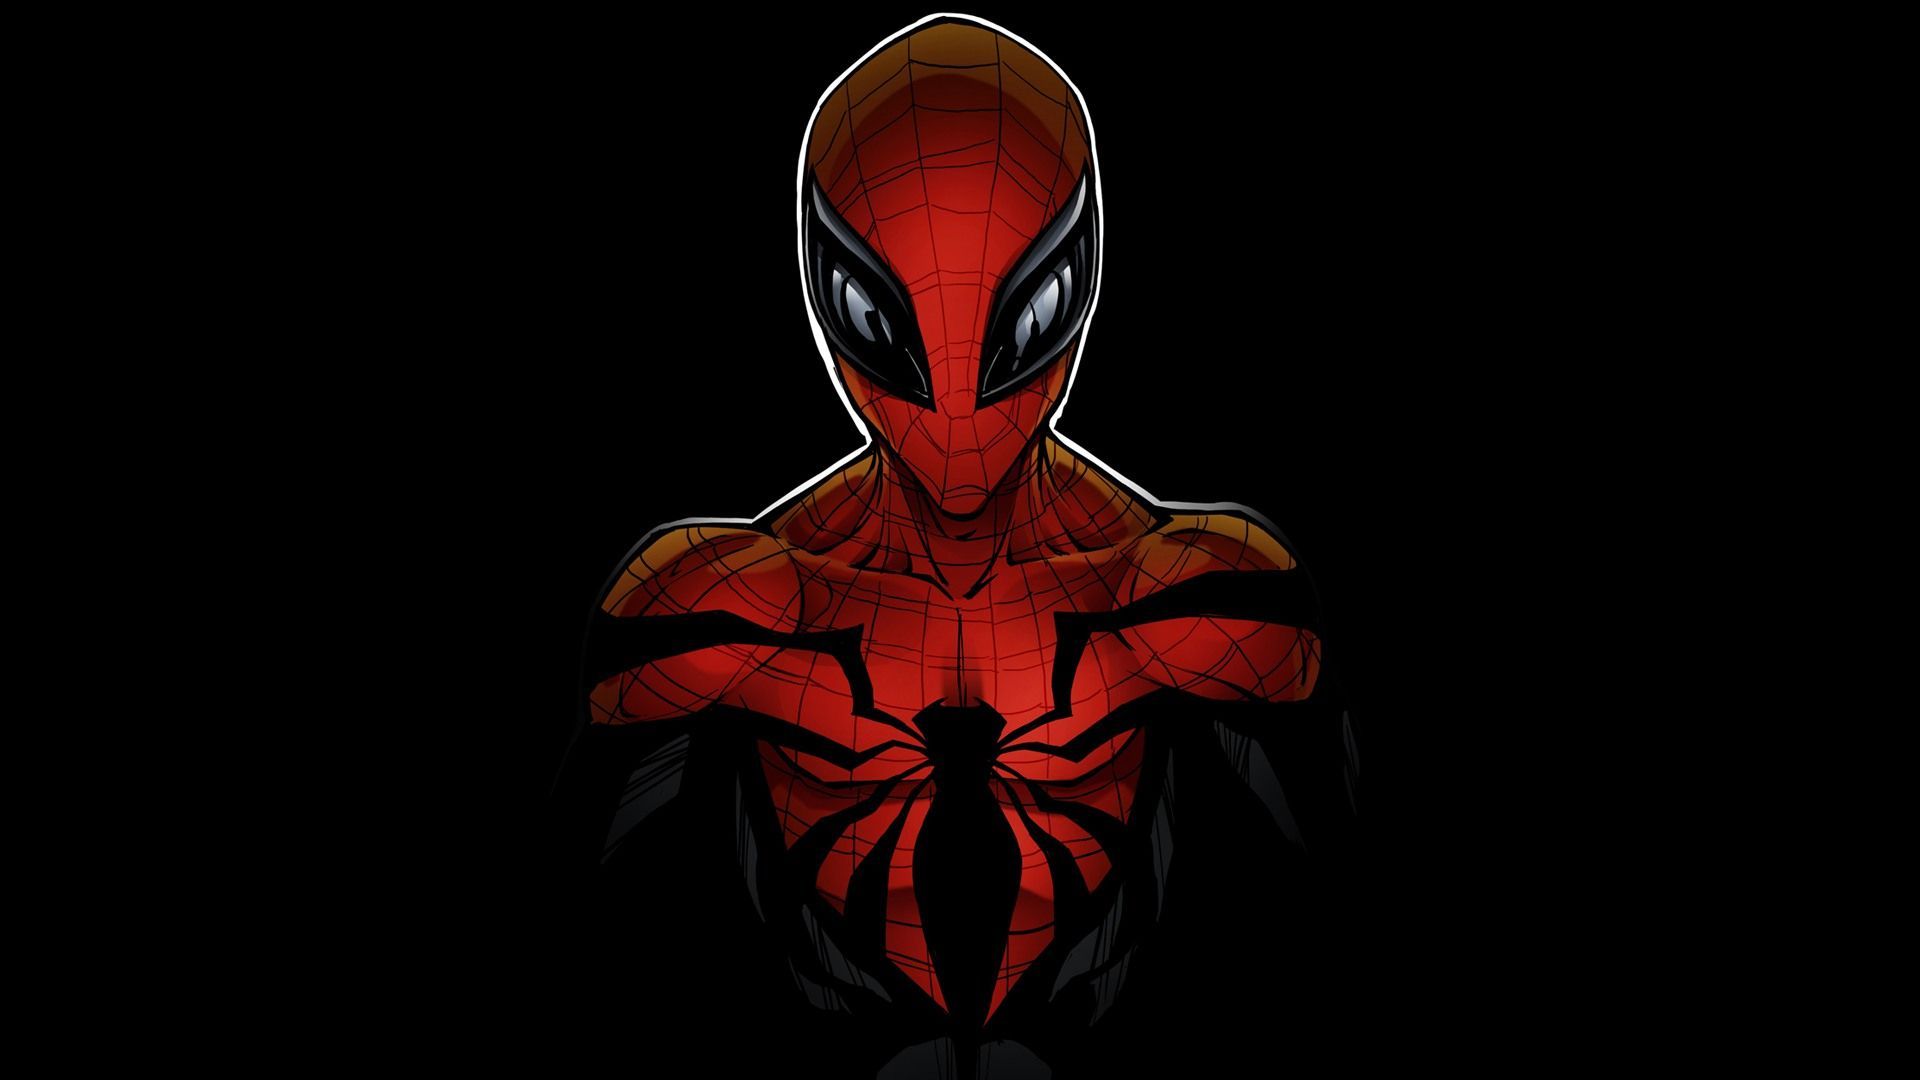 Marvel Spiderman Wallpaper Gallery